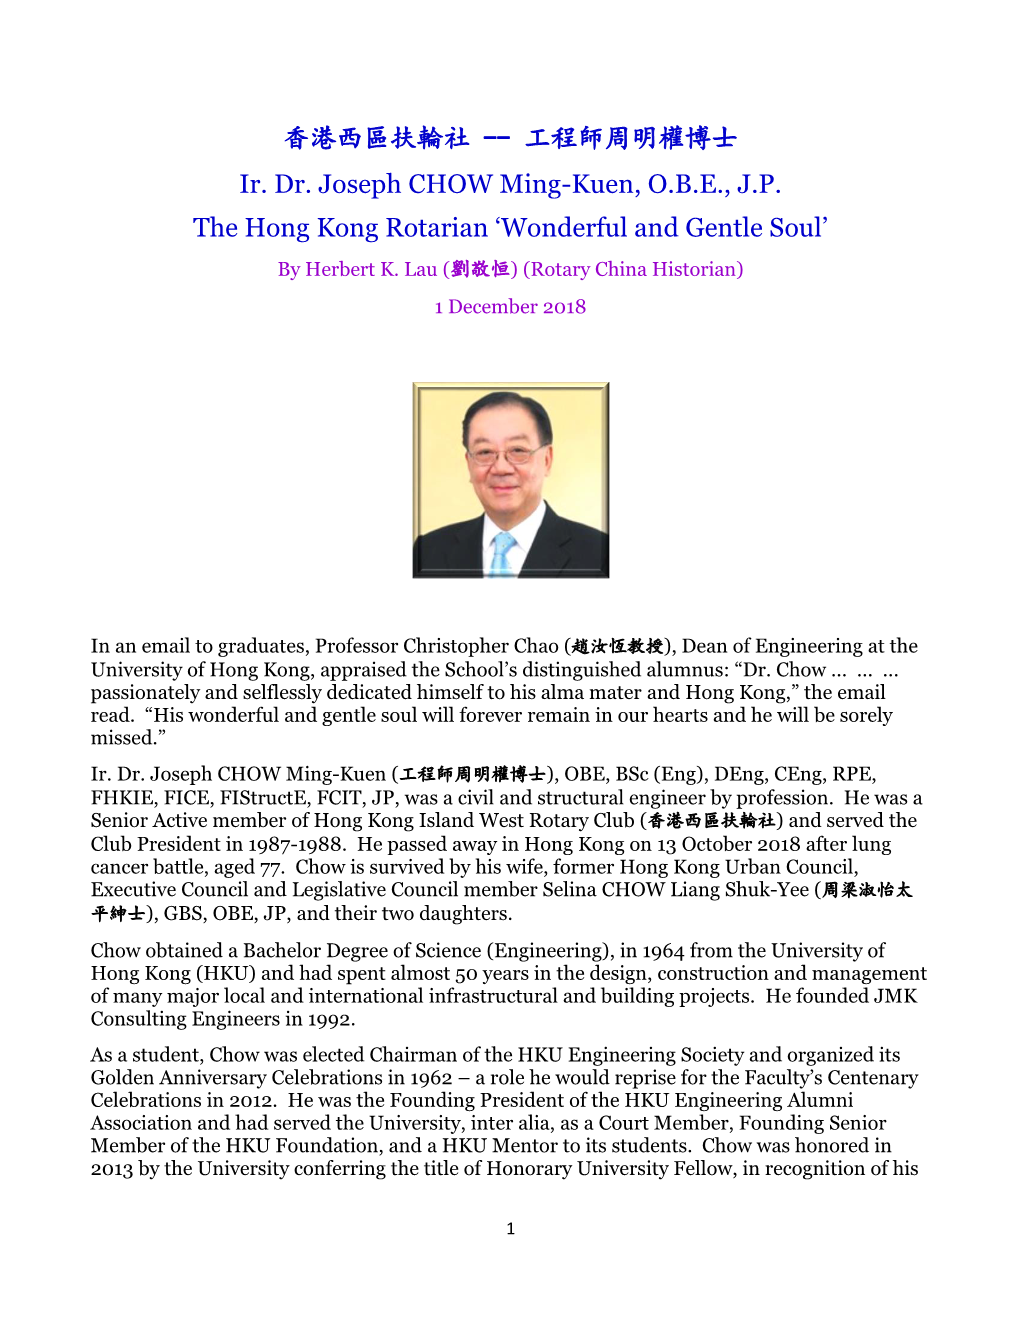 香港西區扶輪社-- 工程師周明權博士ir. Dr. Joseph CHOW Ming-Kuen, O.B.E., J.P. the Hong Kong Rotarian 'Wonderfu